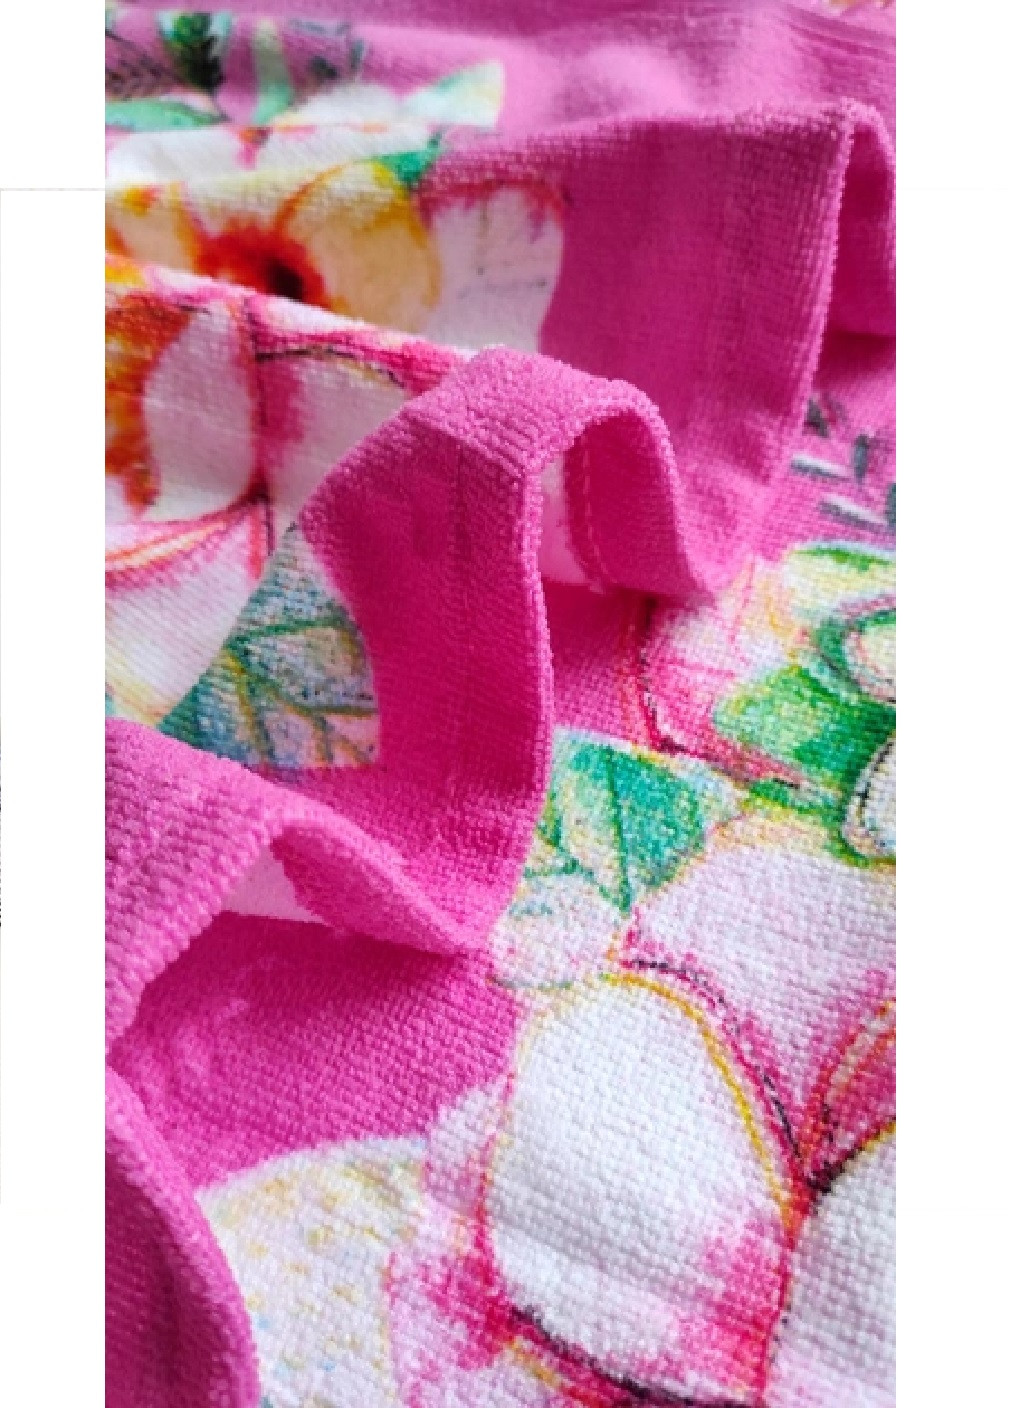 Unbranded дитячий пляжний рушник пончо з капюшоном мікрофібра для ванної басейну пляжу 60х60 см (474679-prob) єдиноріг малюнок рожевий виробництво -